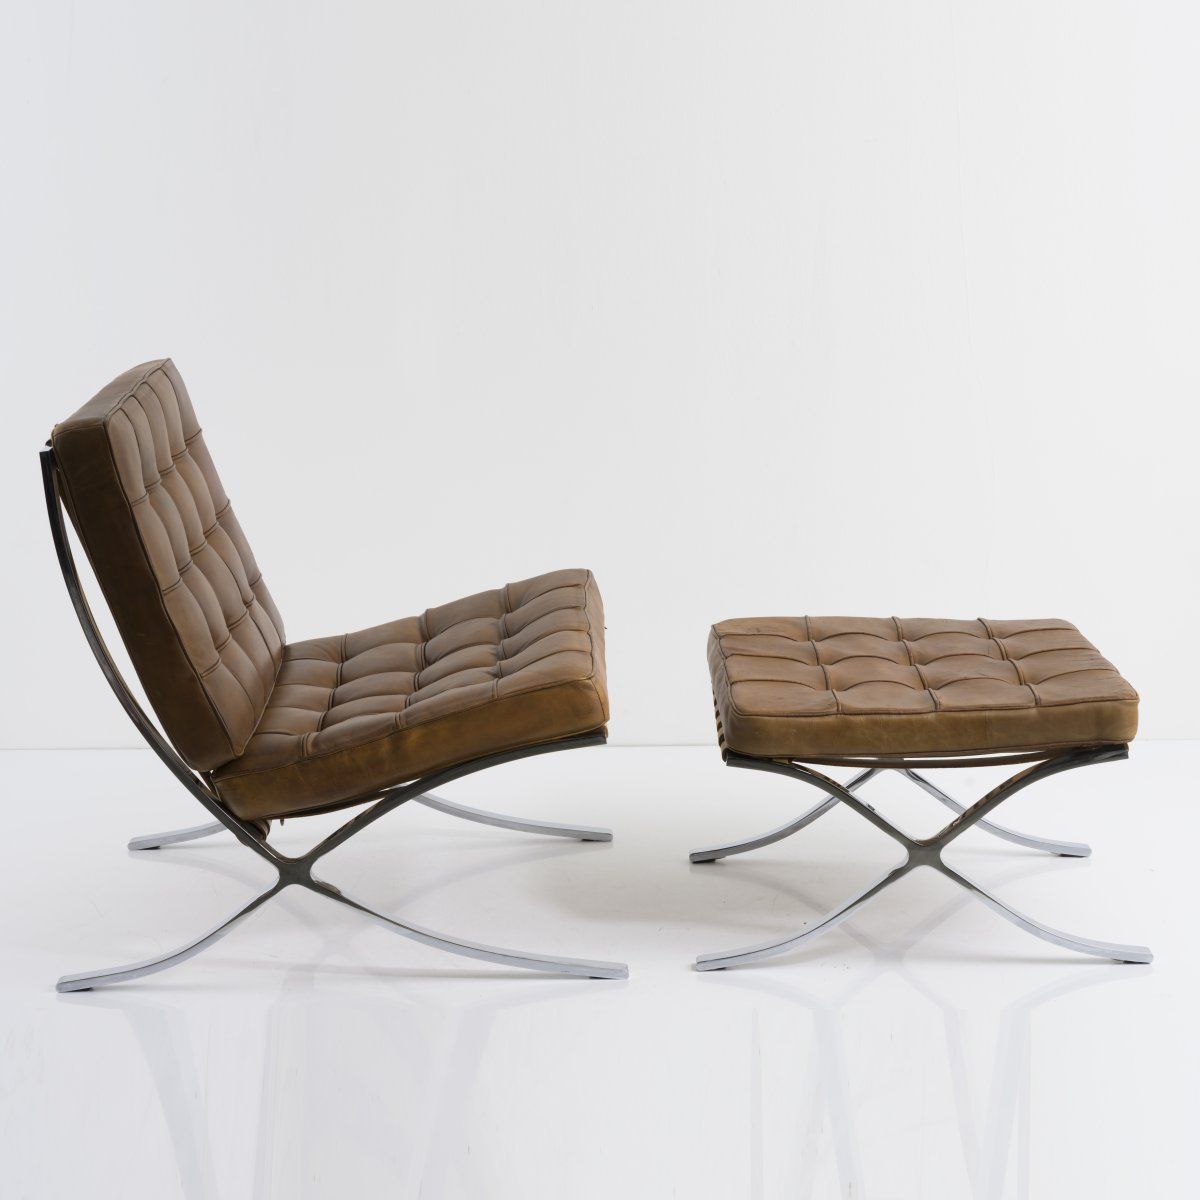 Null 路德维希-米斯-凡-德-罗，"巴塞罗那椅 "与长椅，1929年，休闲椅。高77 x 74 x 77.5厘米；卧榻：高37.5 x 58 x 62厘米。&hellip;